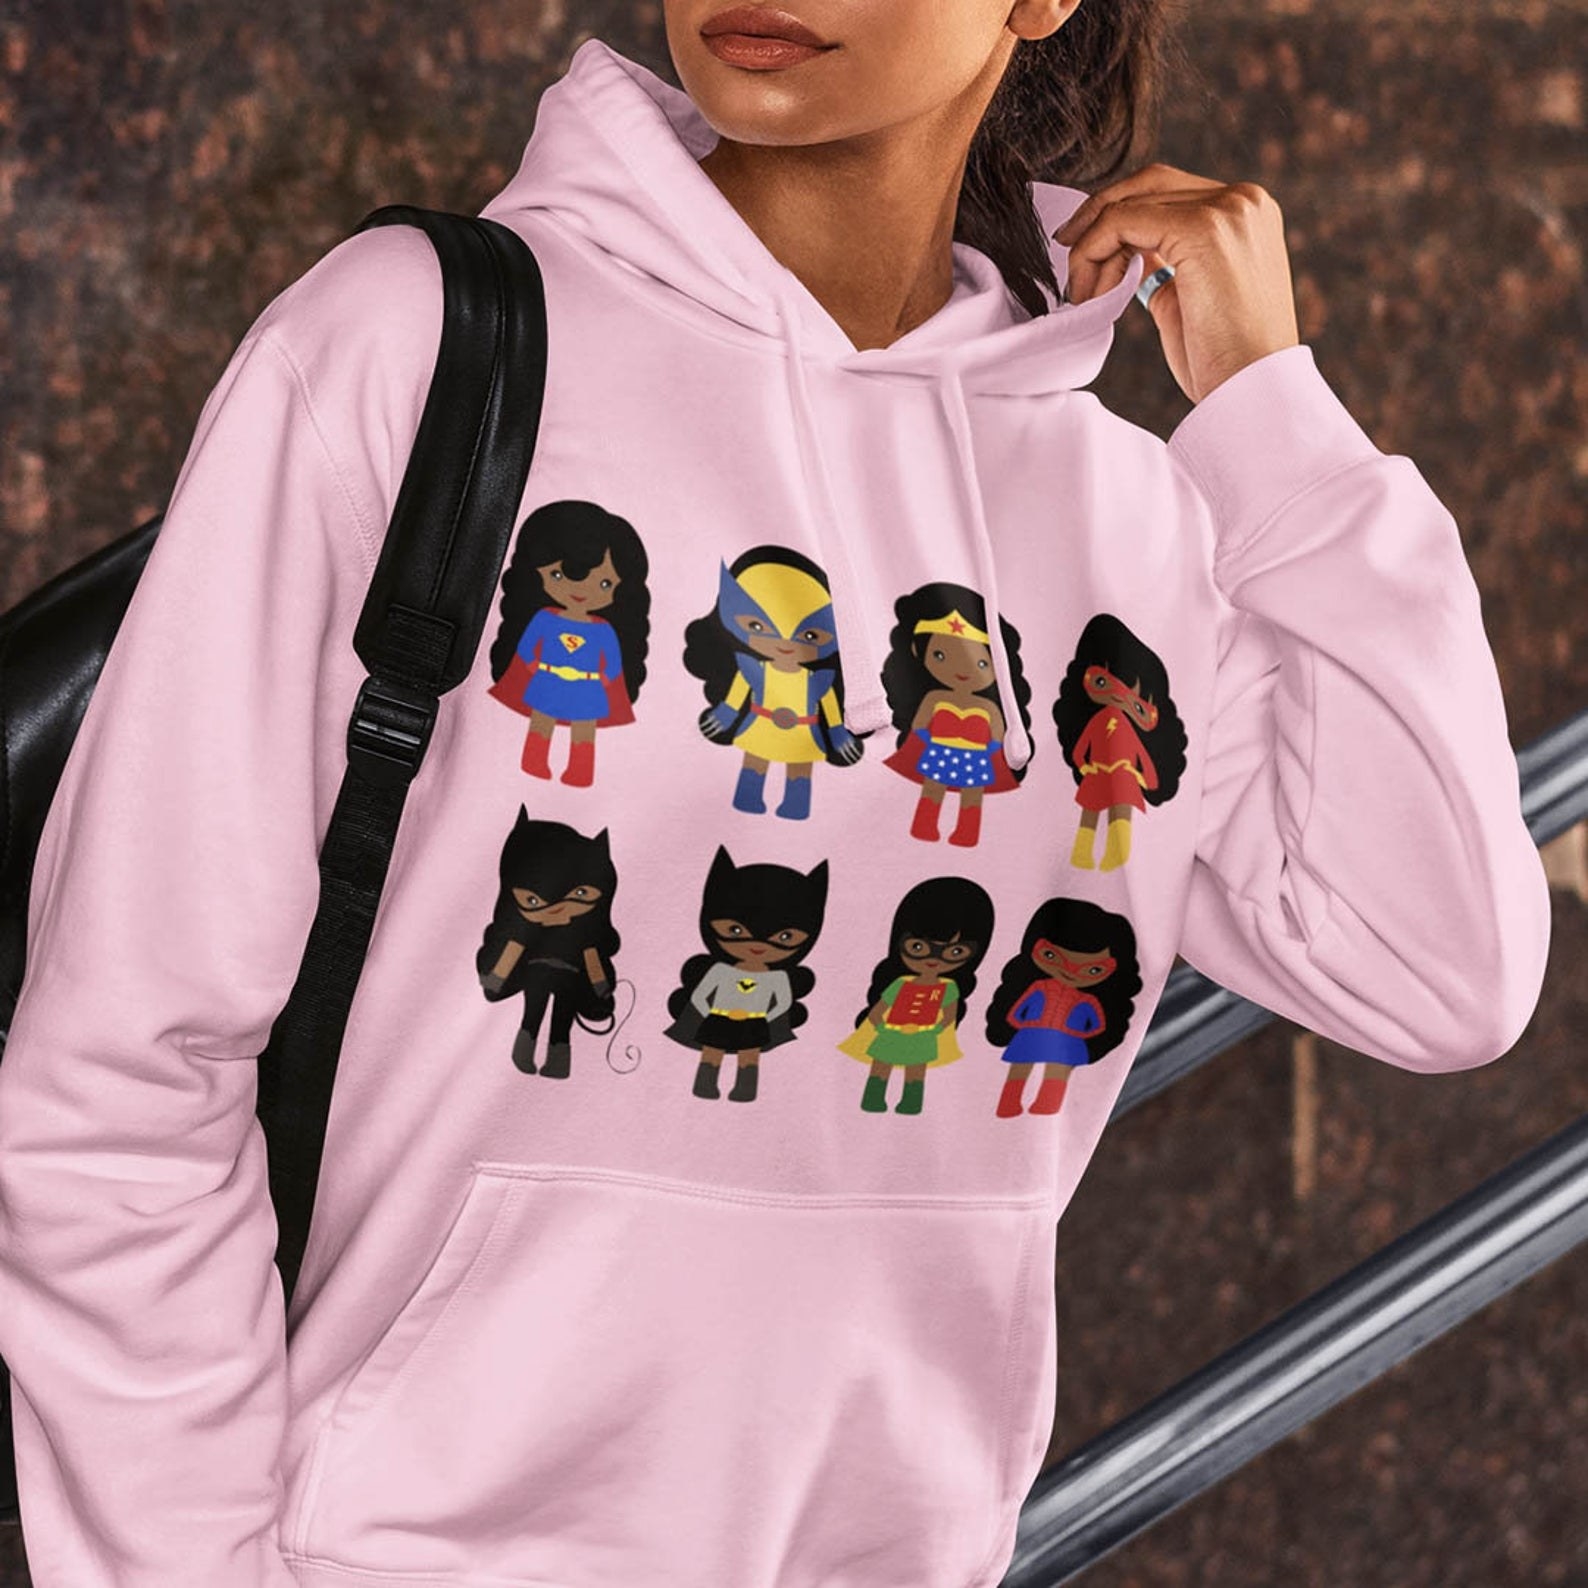 粉红色的连帽上衣和棕色皮肤卡通超能英雄包括超人,金刚狼,神奇女侠,Flash,蝙蝠的女孩,猫女,罗宾和蜘蛛侠